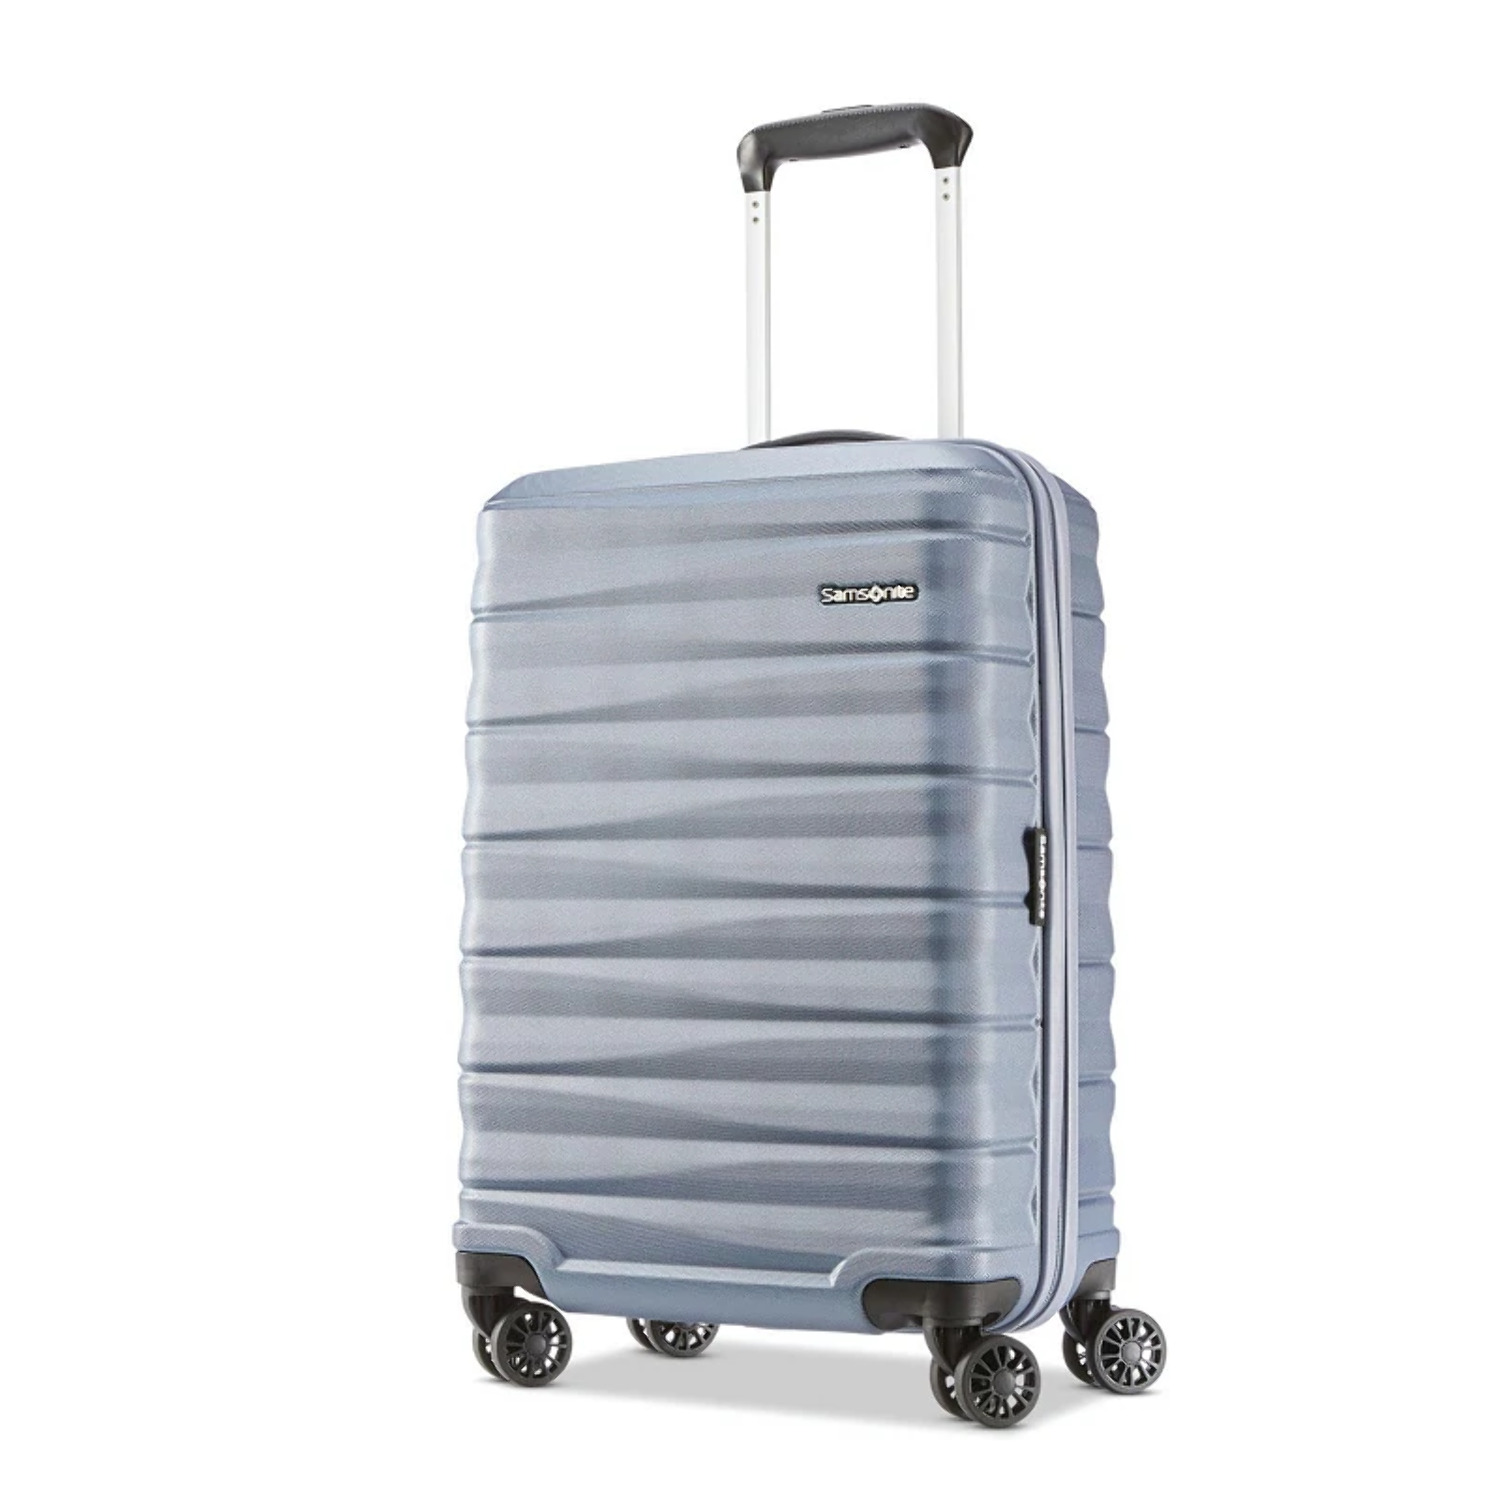 Samsonite Kingsbury Hardside Suitcase 2-Piece Luggage Set - Slate Blue - New - image 5 of 11